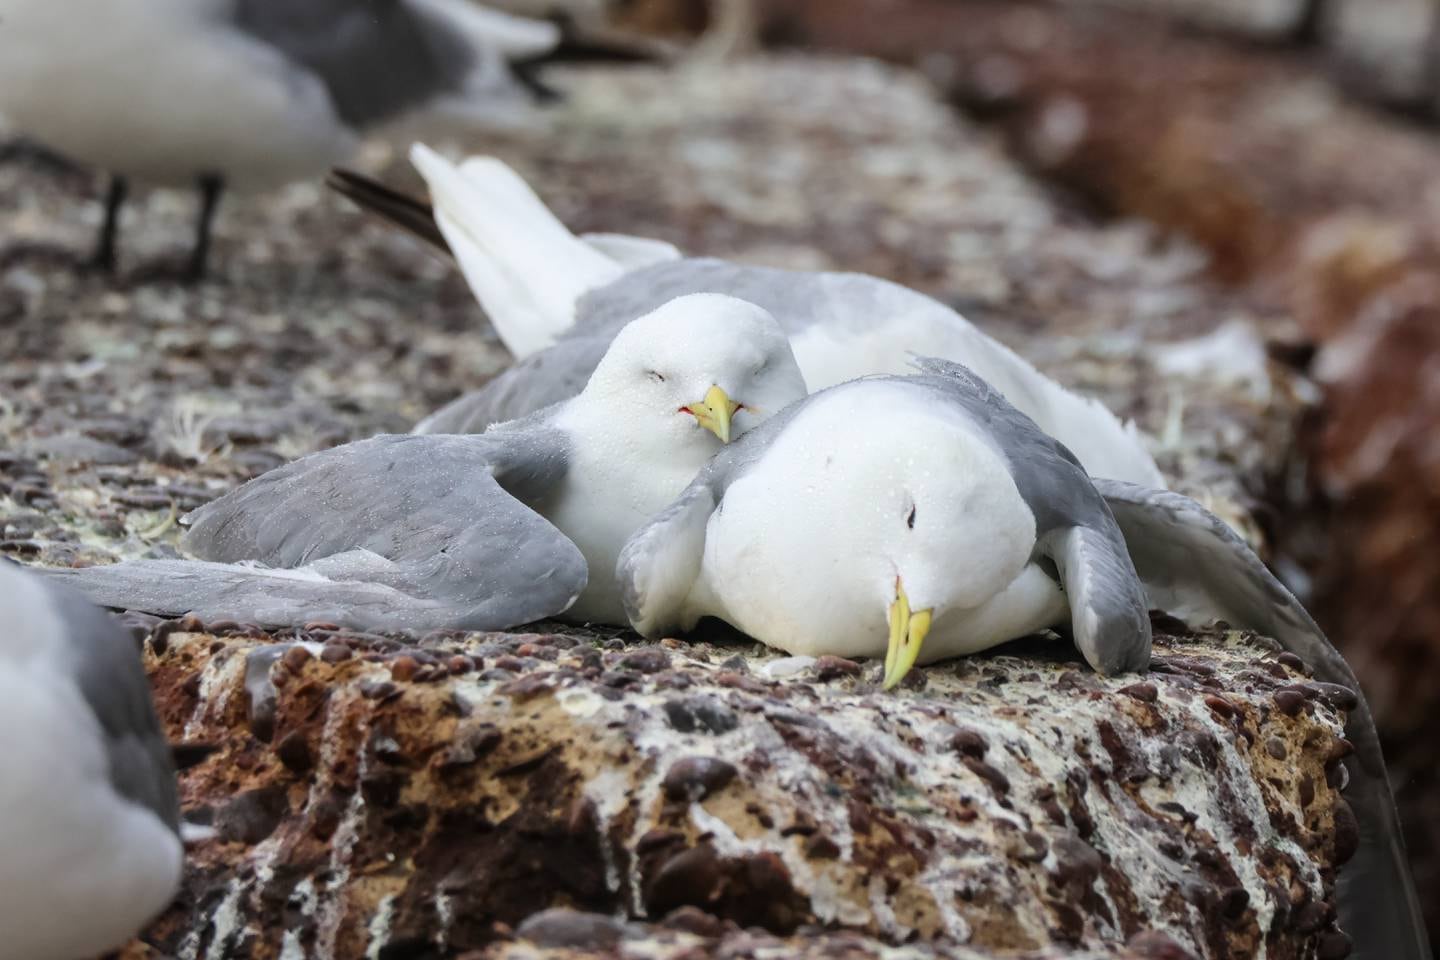 – Fuglene får rykninger og greier ikke å fly, så dør de. Vi har vært bekymret for utbrudd av fugleinfluensa, men trodde ikke at det kunne bli så ille, sier forsker Tone Kristin Reiertsen i Norsk institutt for naturforskning (NINA).